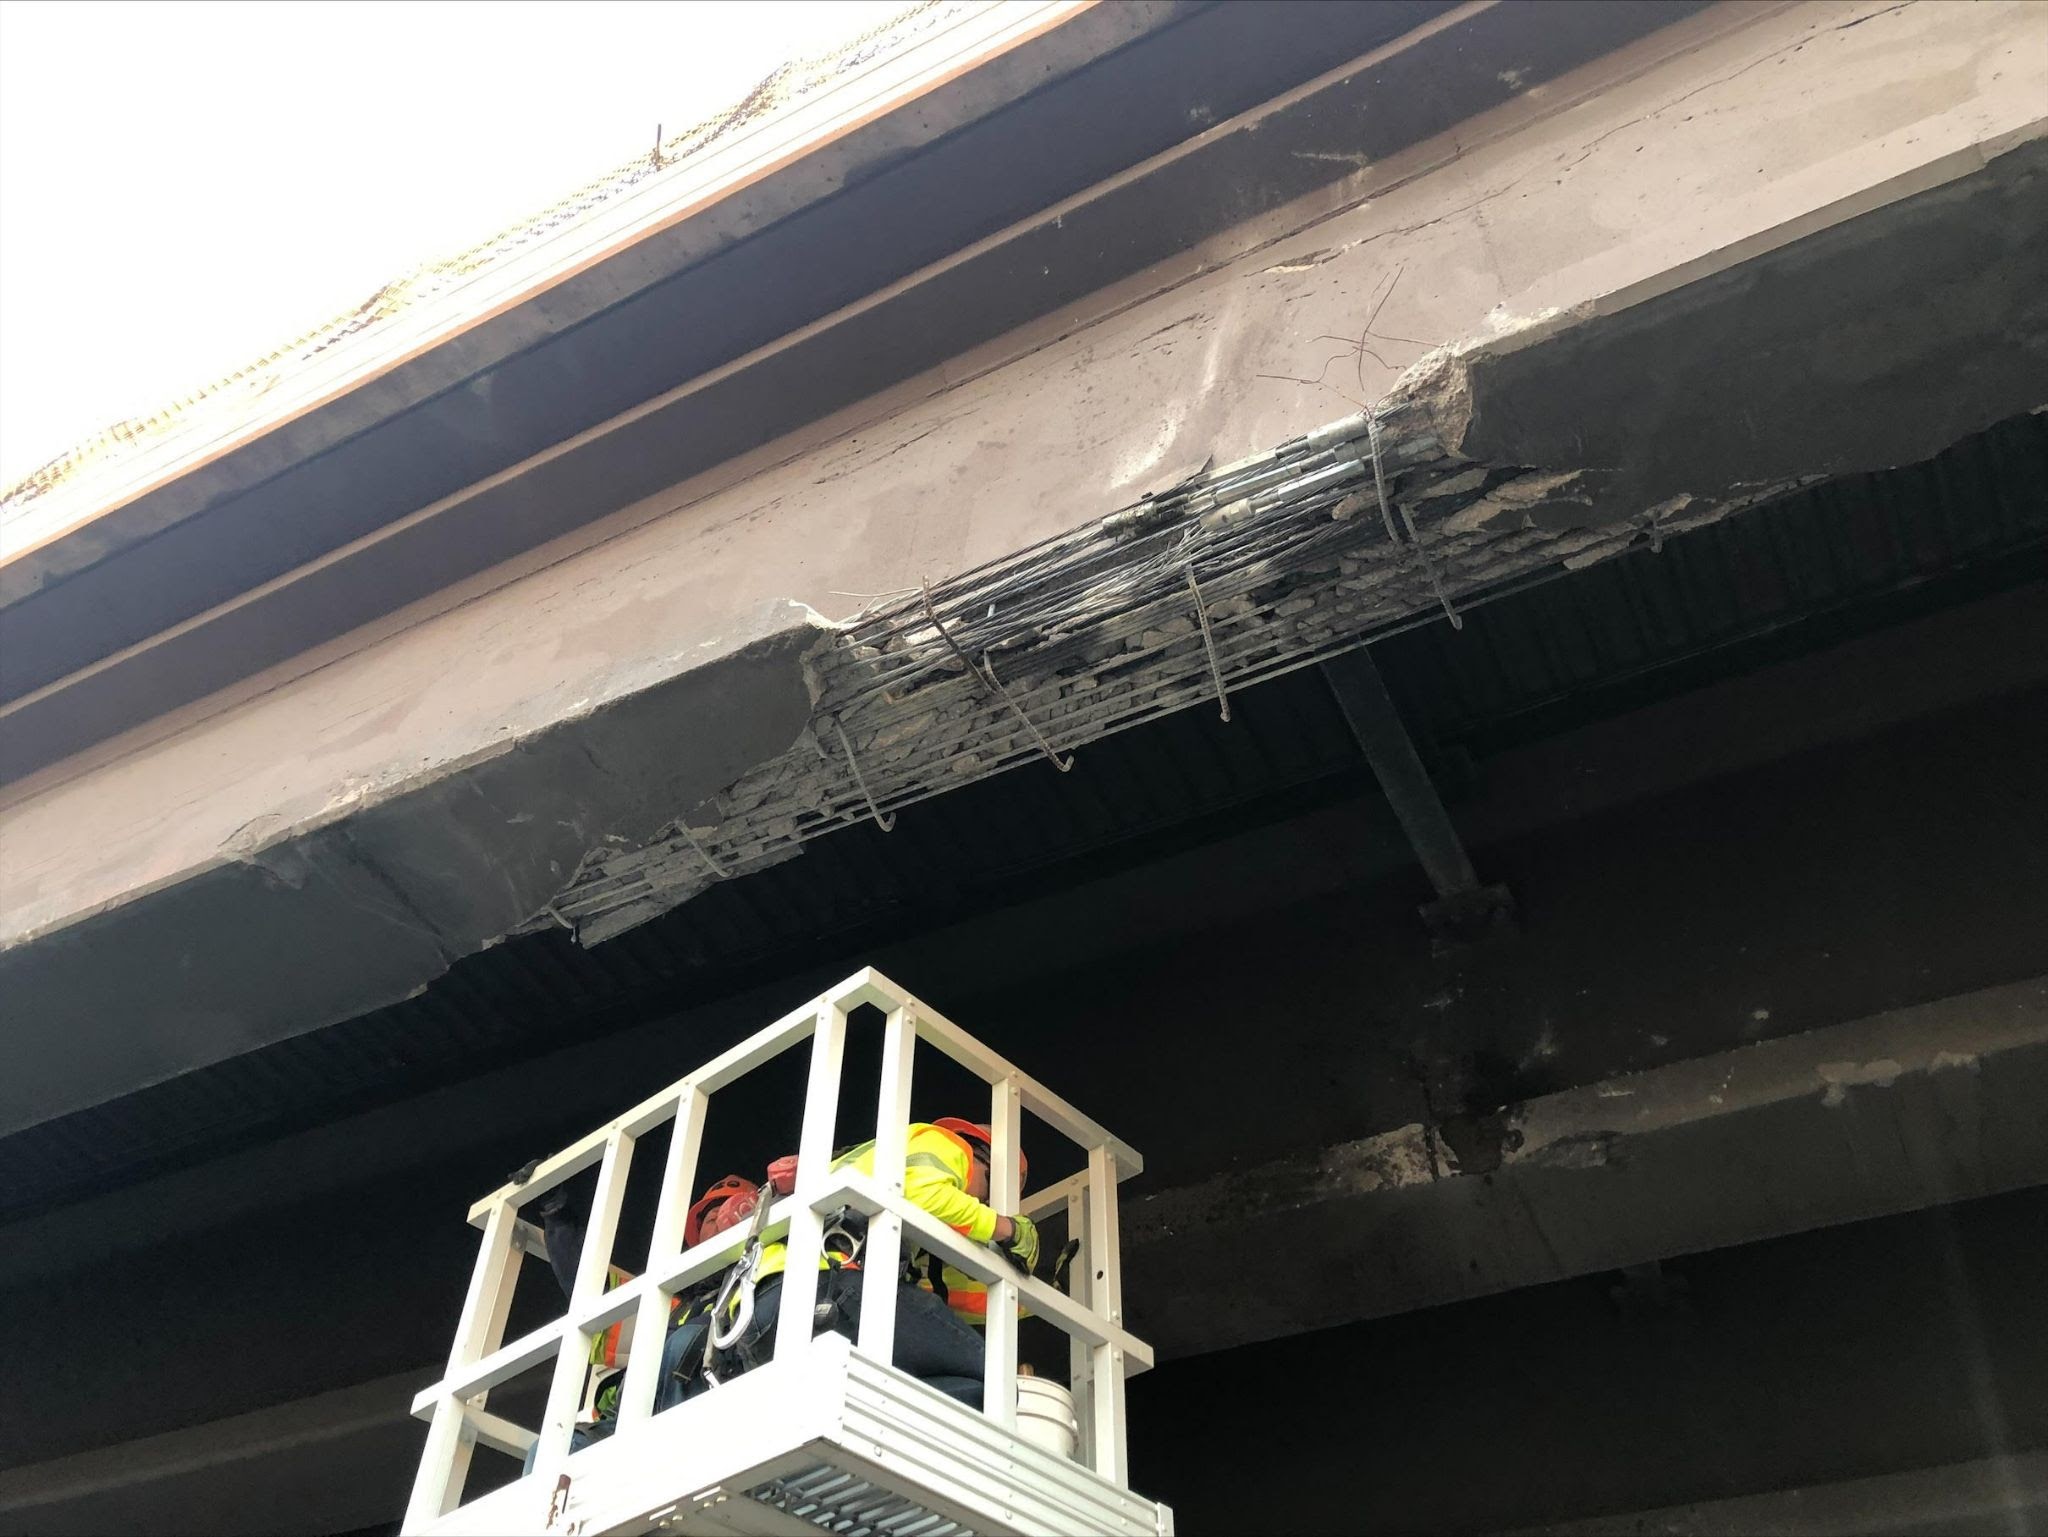 Bridge damage along I-25 detail image